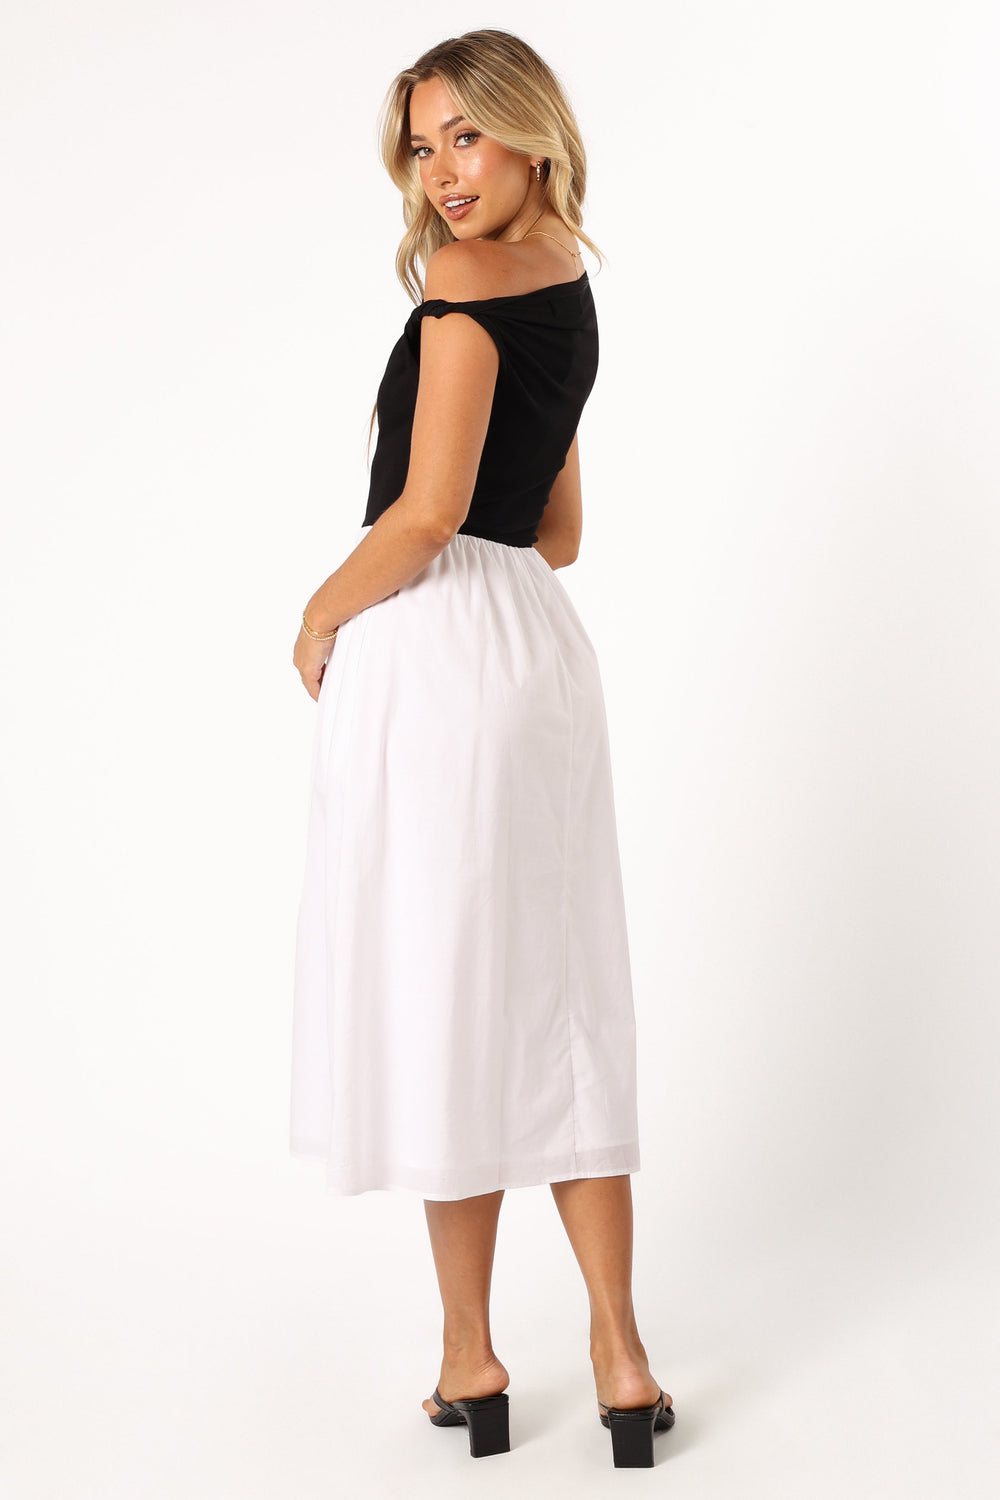 Petal and Pup USA DRESSES Judson Midi Dress - White/Black